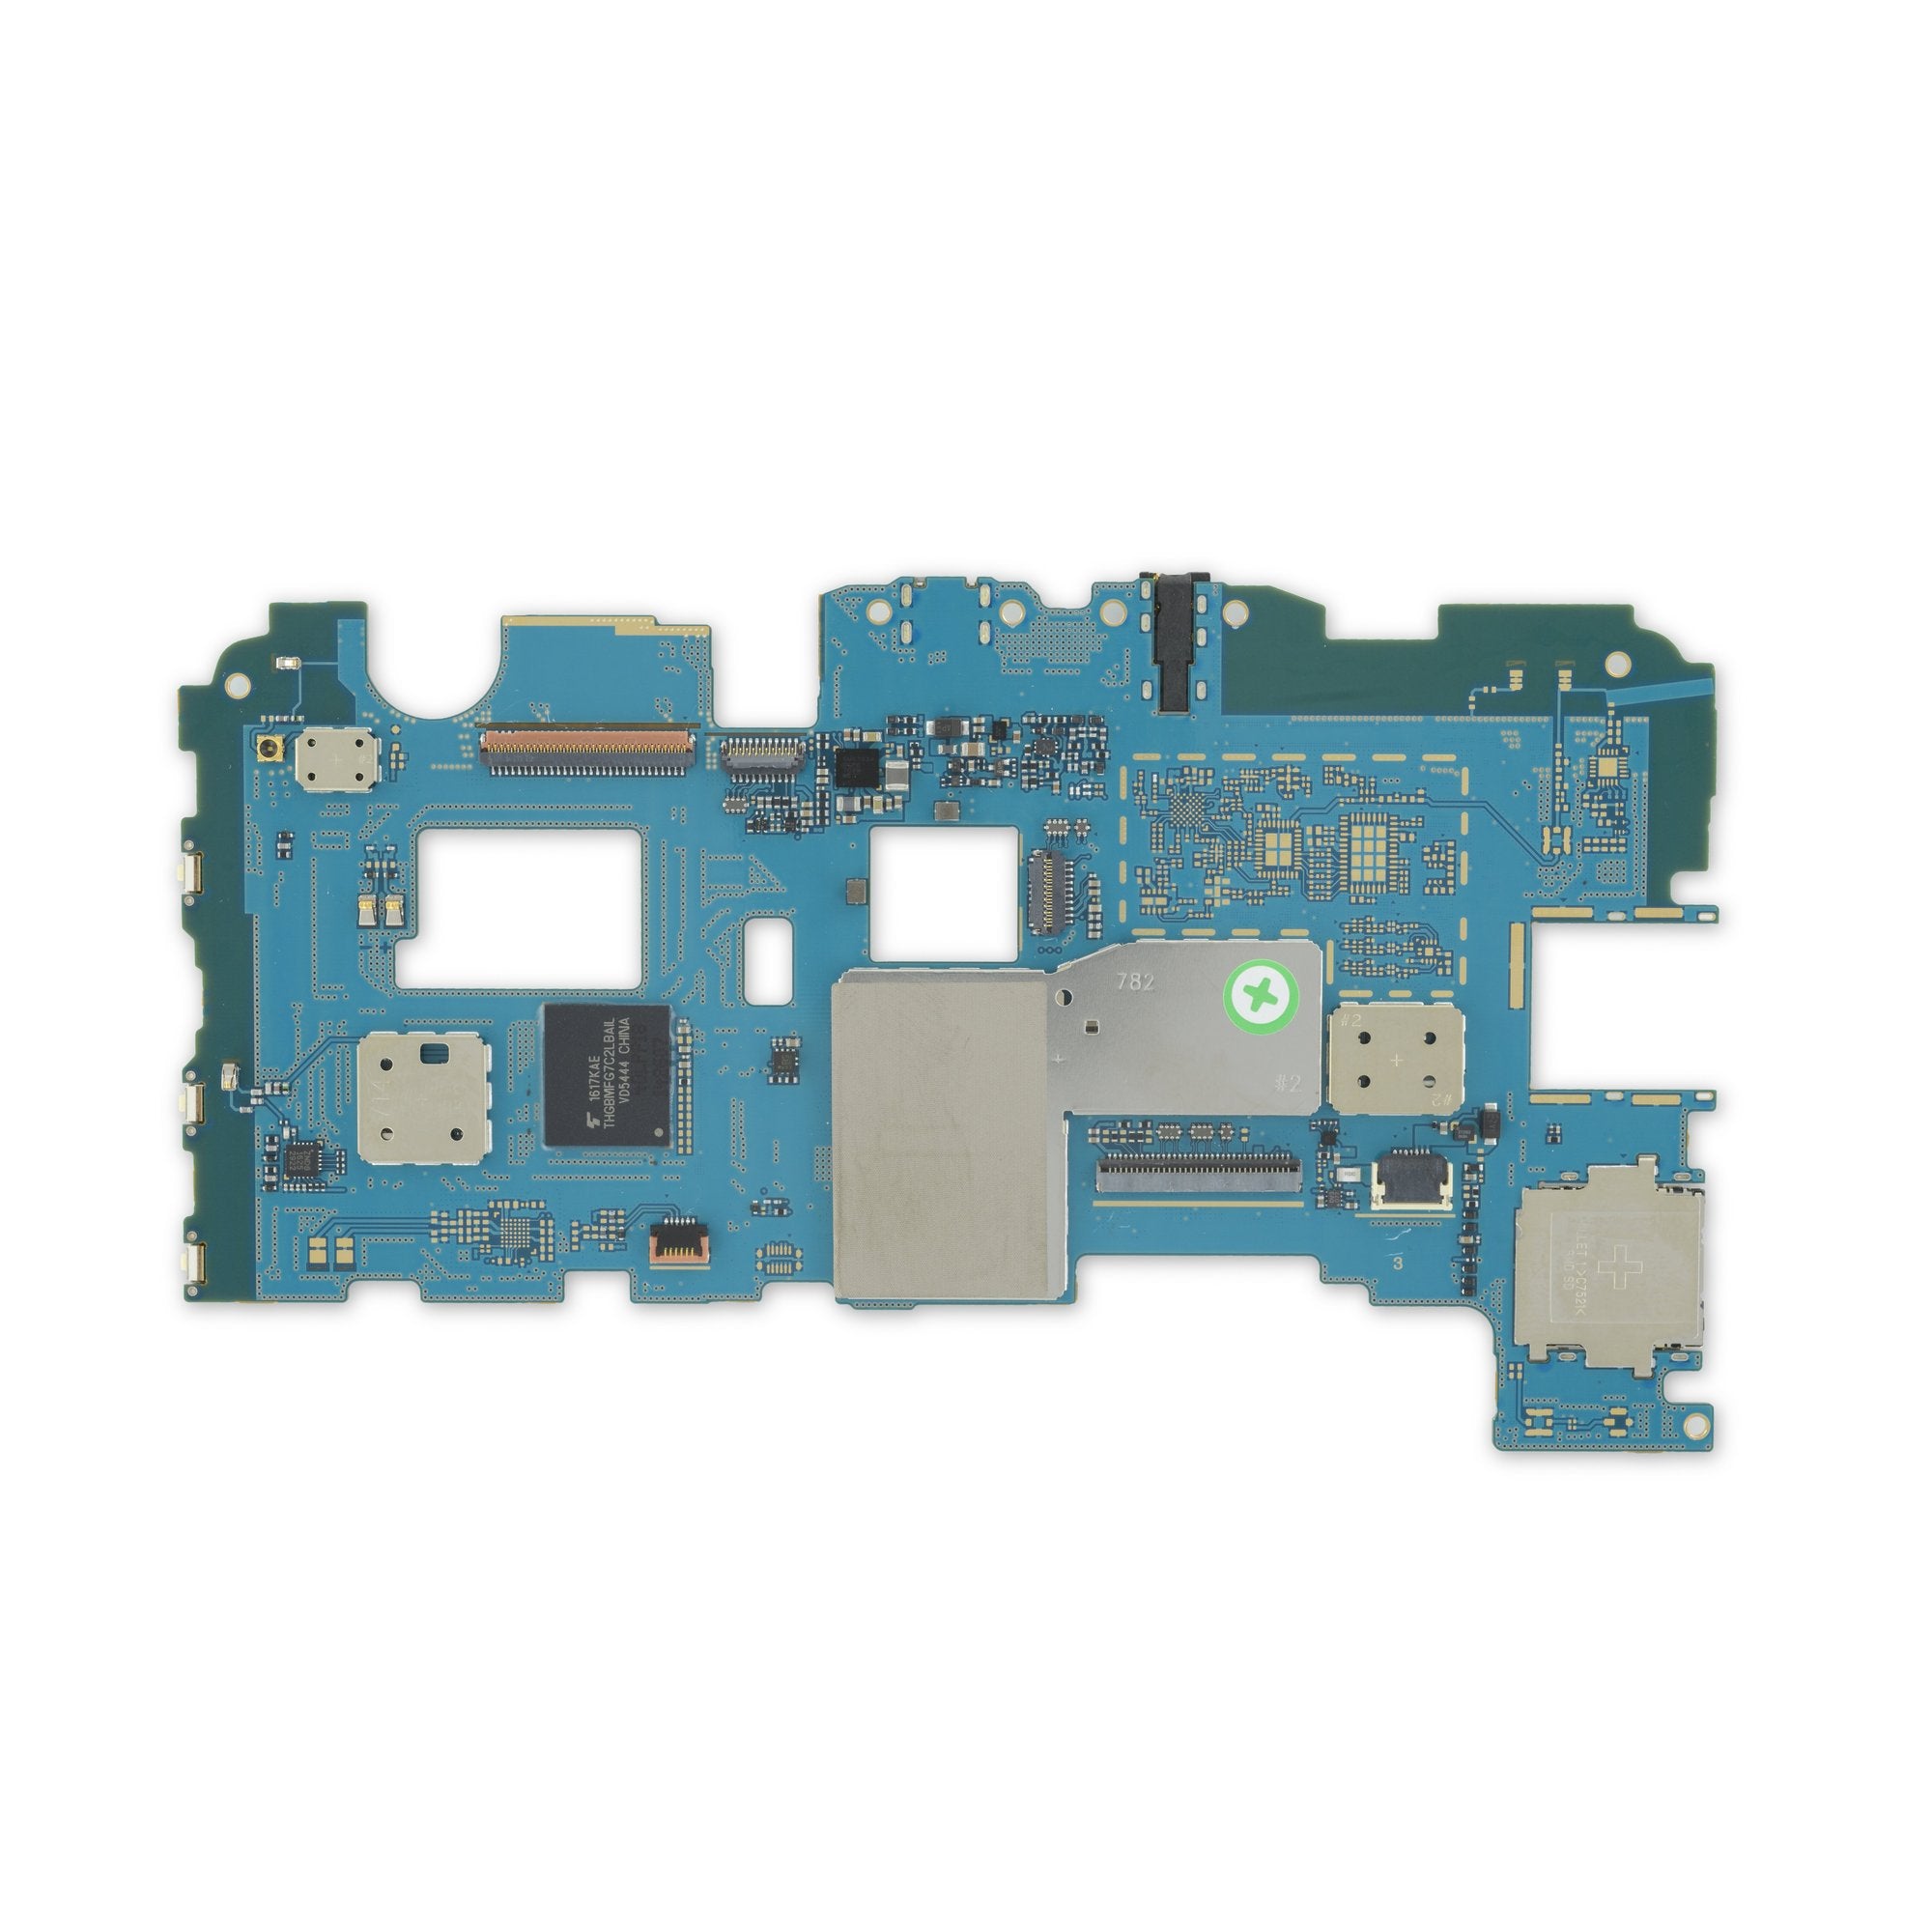 Galaxy Tab E 9.6 (Wi-Fi) Motherboard 16 GB Used